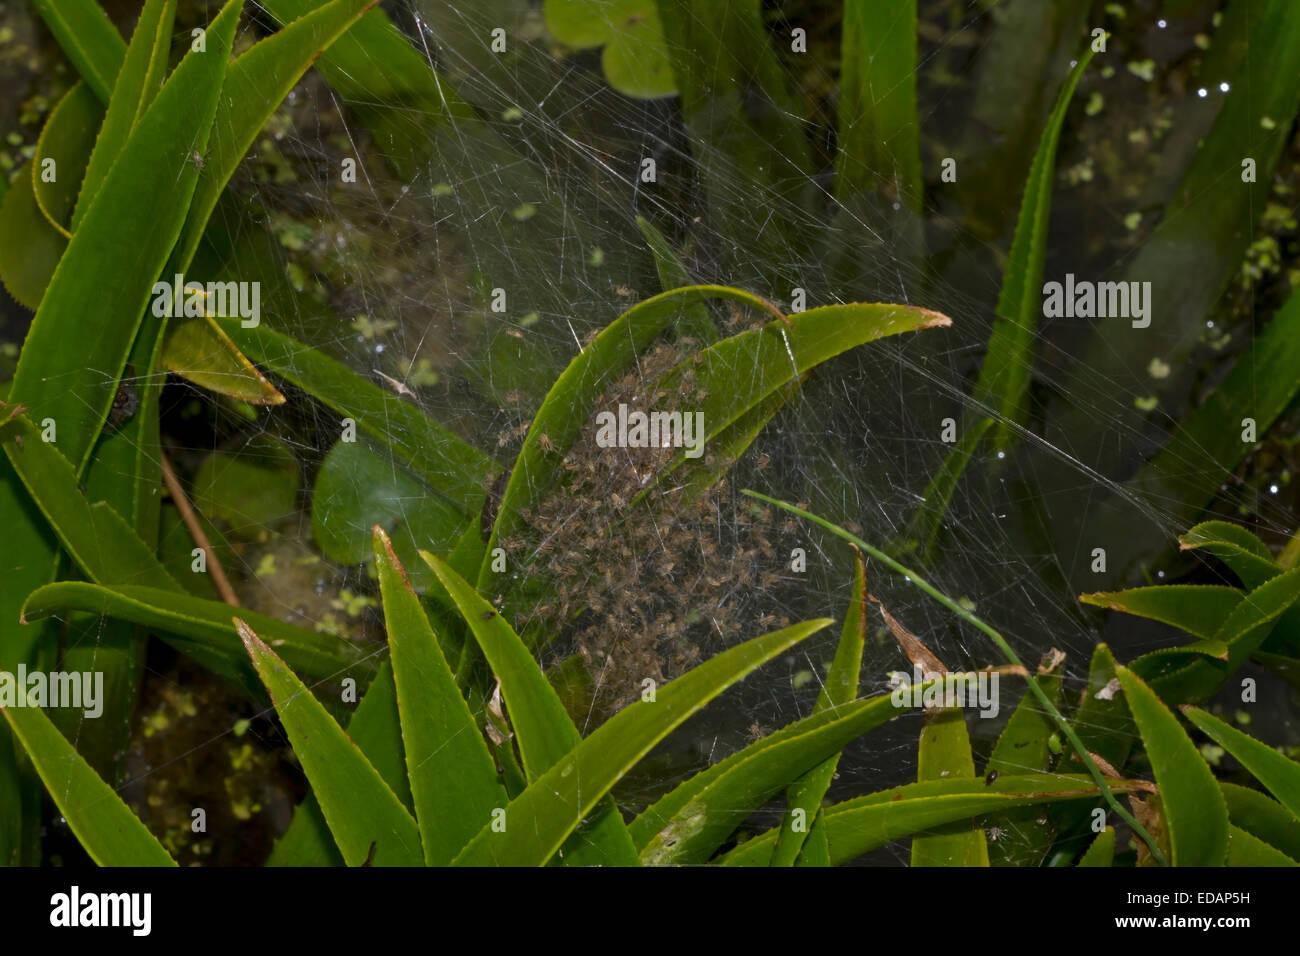 Fen Raft Spider - Dolomedes plantarius- spiderling nursery Stock Photo